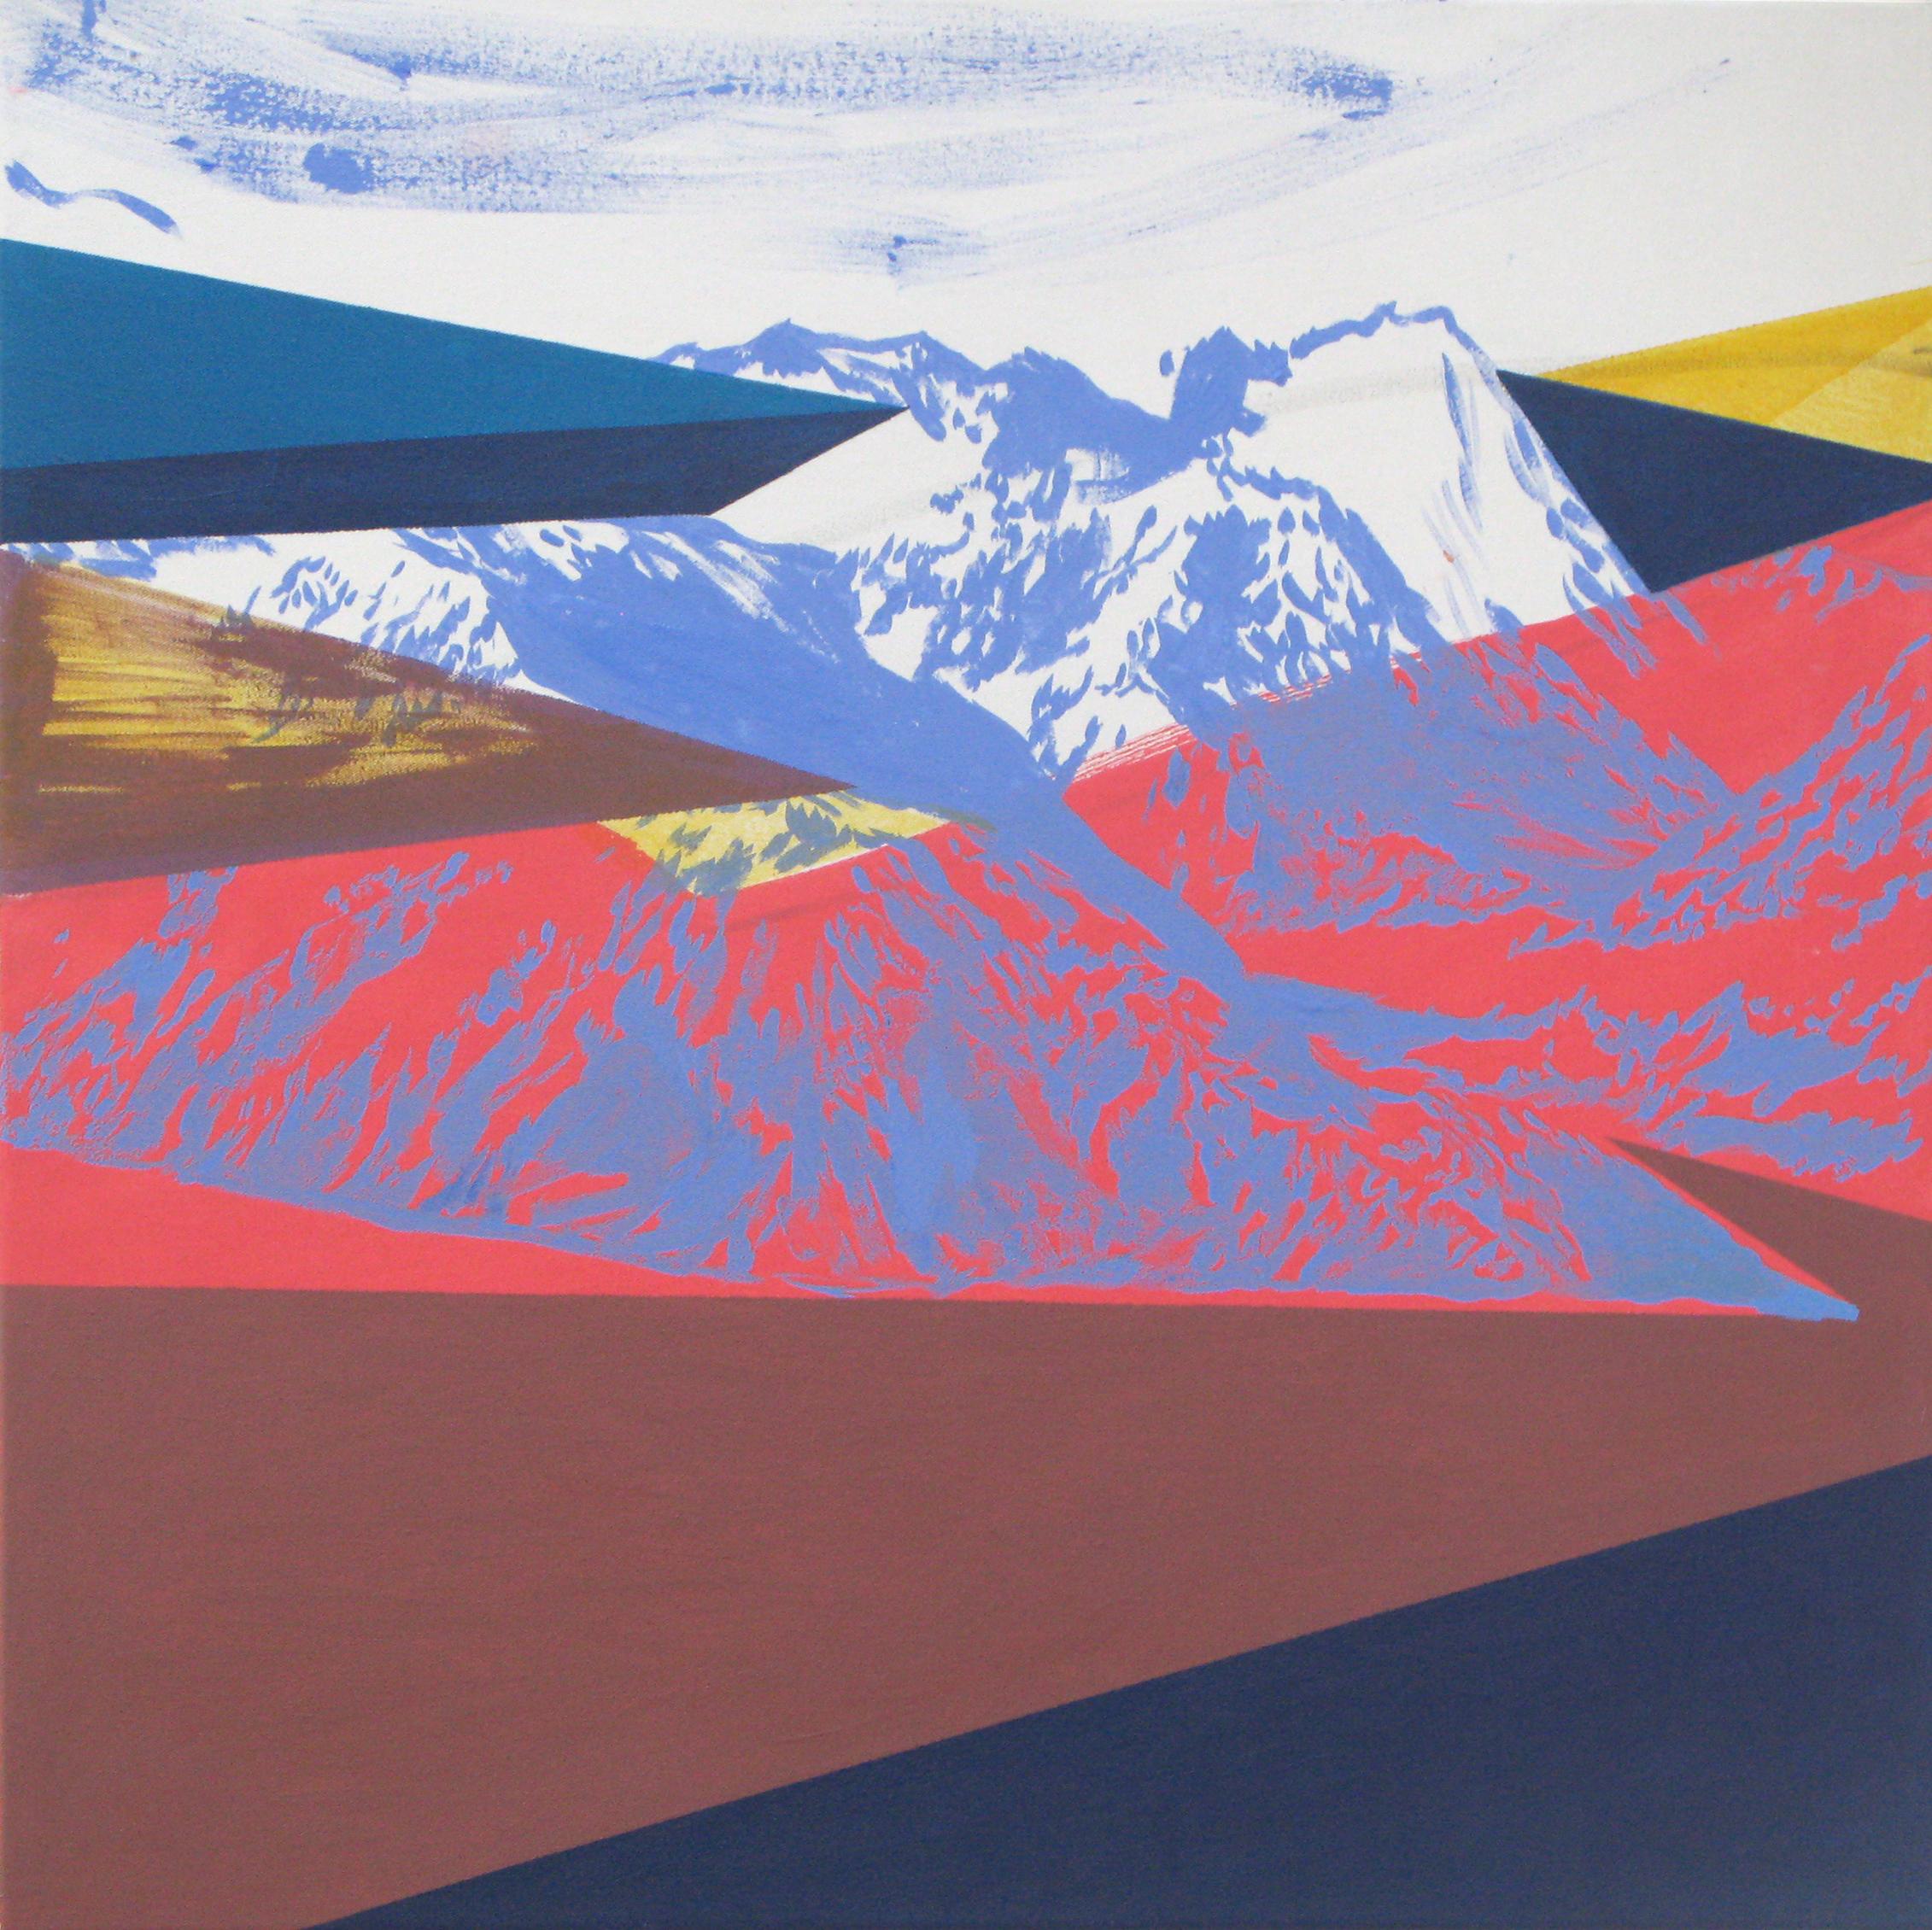 Road - Peinture moderne de paysage et de montagnes, abstraite, joyeuse et colorée